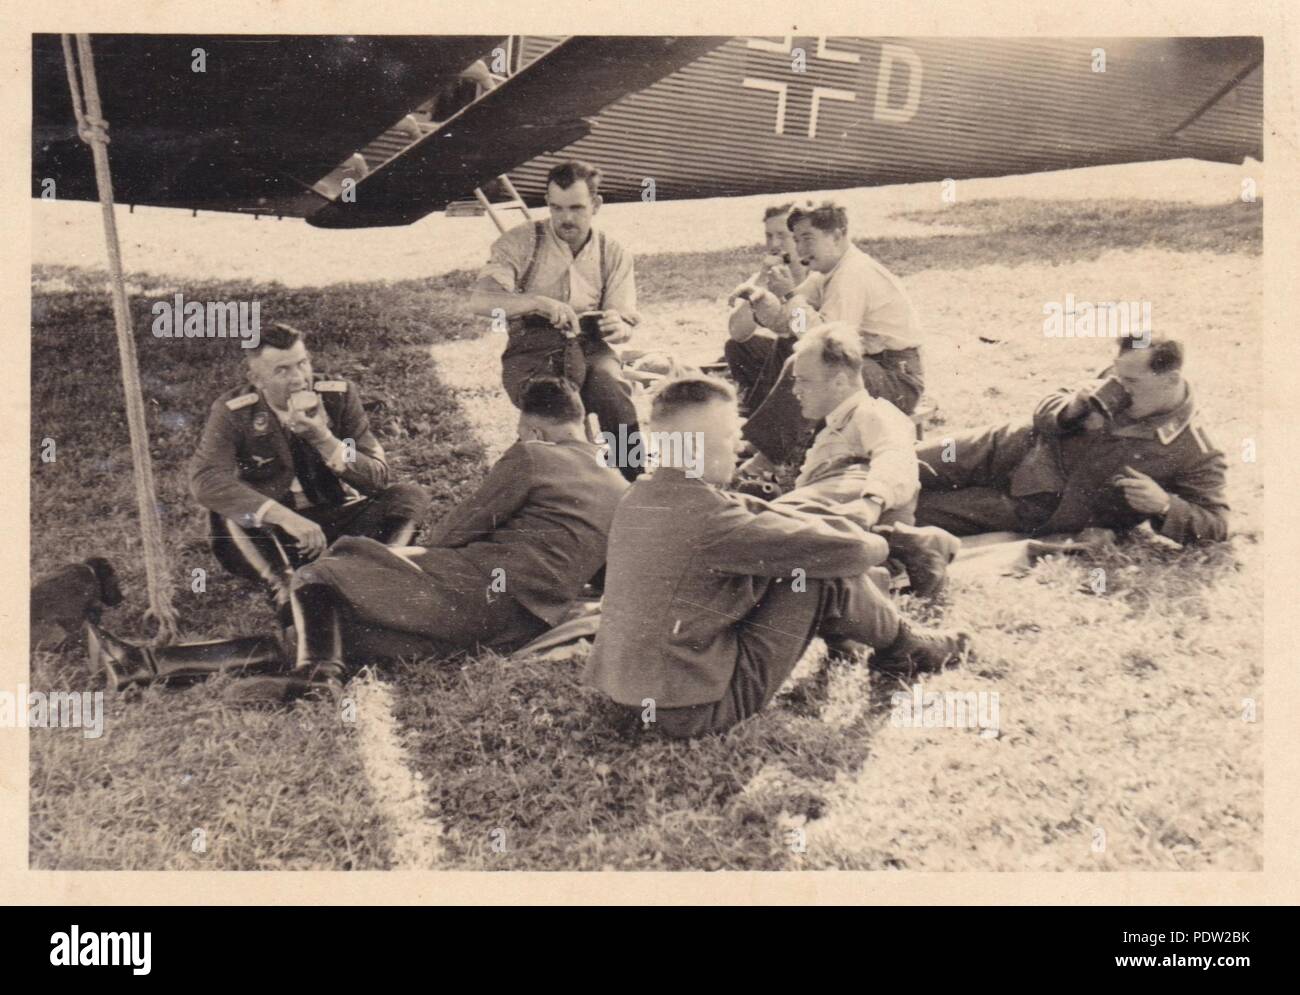 Immagine da l'album fotografico di Oberfeldwebel Karl Gendner di 1. Staffel, Kampfgeschwader 40: Karl Gendner (sulla destra sul retro) e altri mezzi di trasporto equipaggi da 3./KGzbV 9 relax tra le missioni accanto alla loro Junkers Ju52/3m velivoli da trasporto a Cracovia Airfield, Polonia nel settembre 1939. Foto Stock